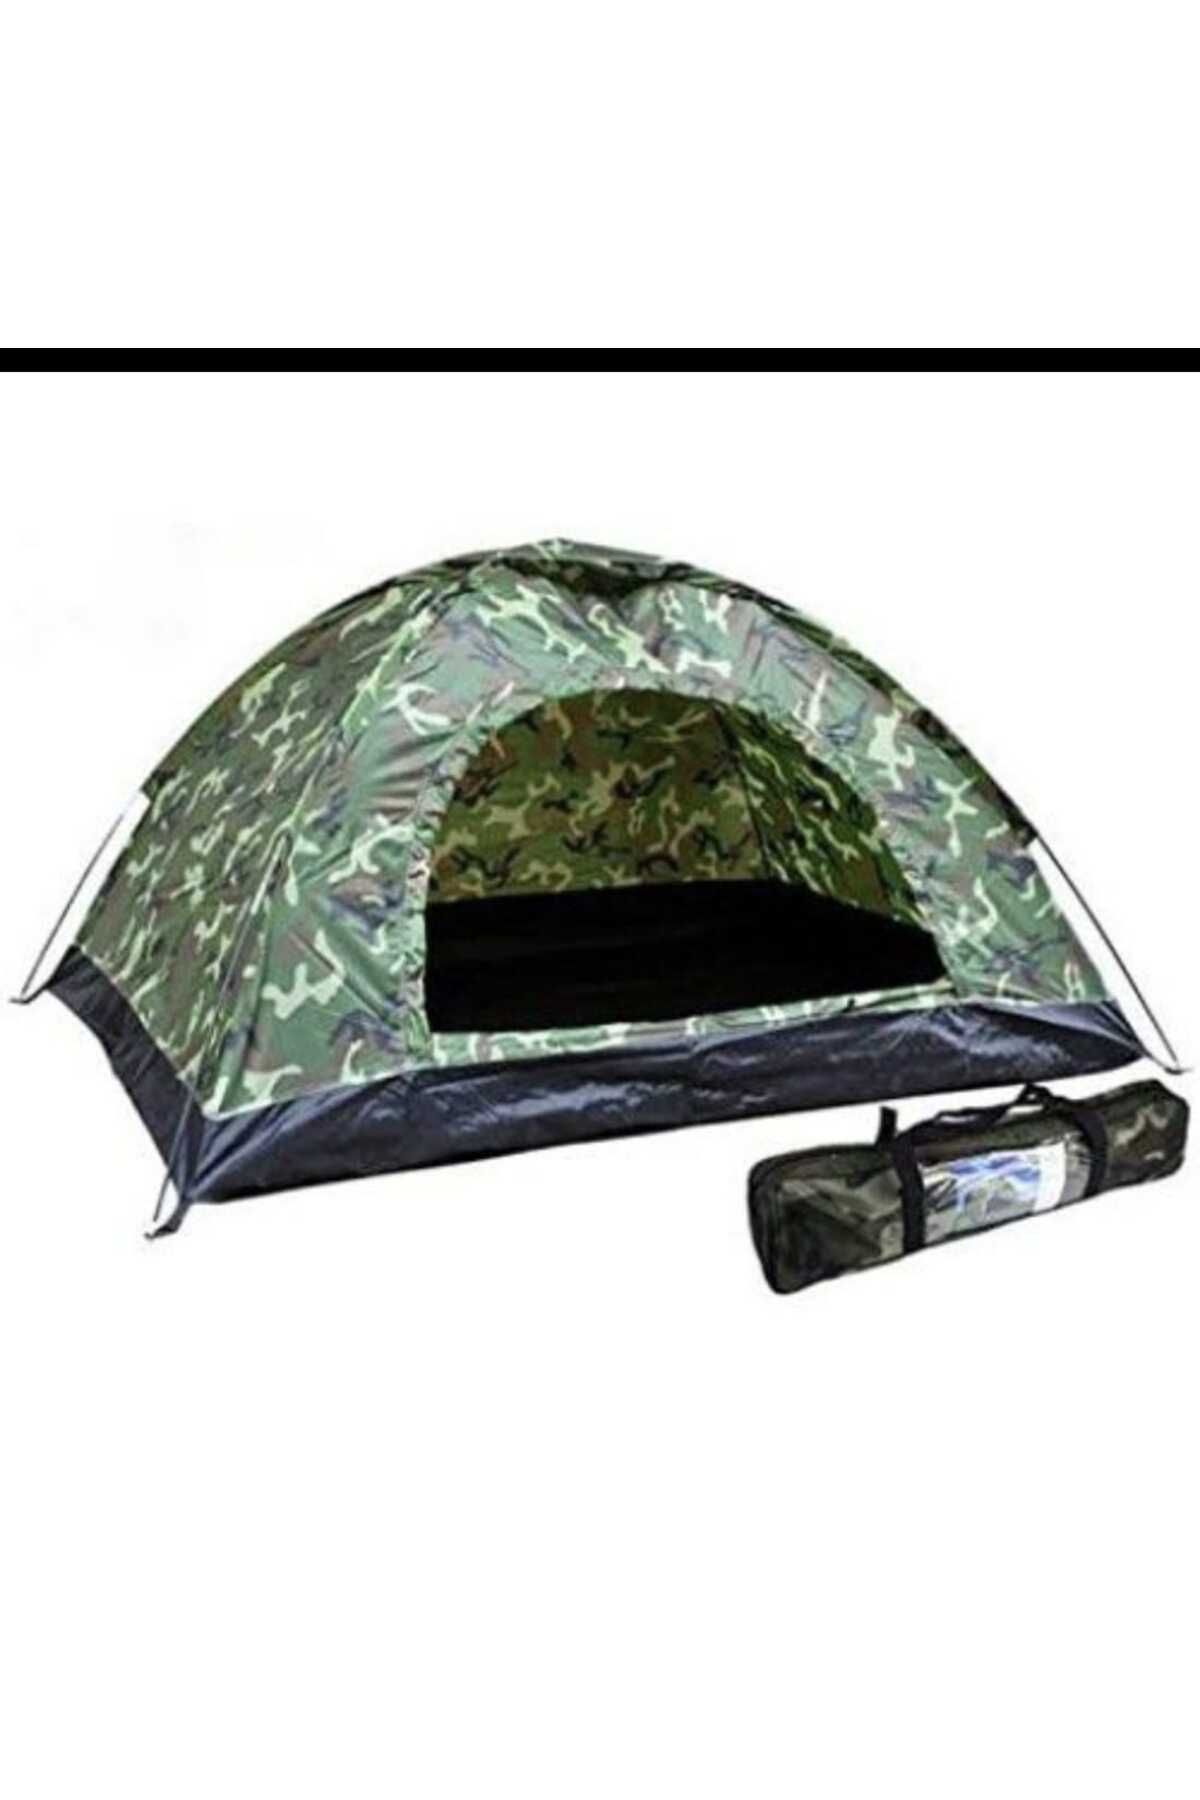 Zey Camping 2 kişilik askeri kamuflaj kolay kurulum kamp orman balıkçı avcı deniz çadırları